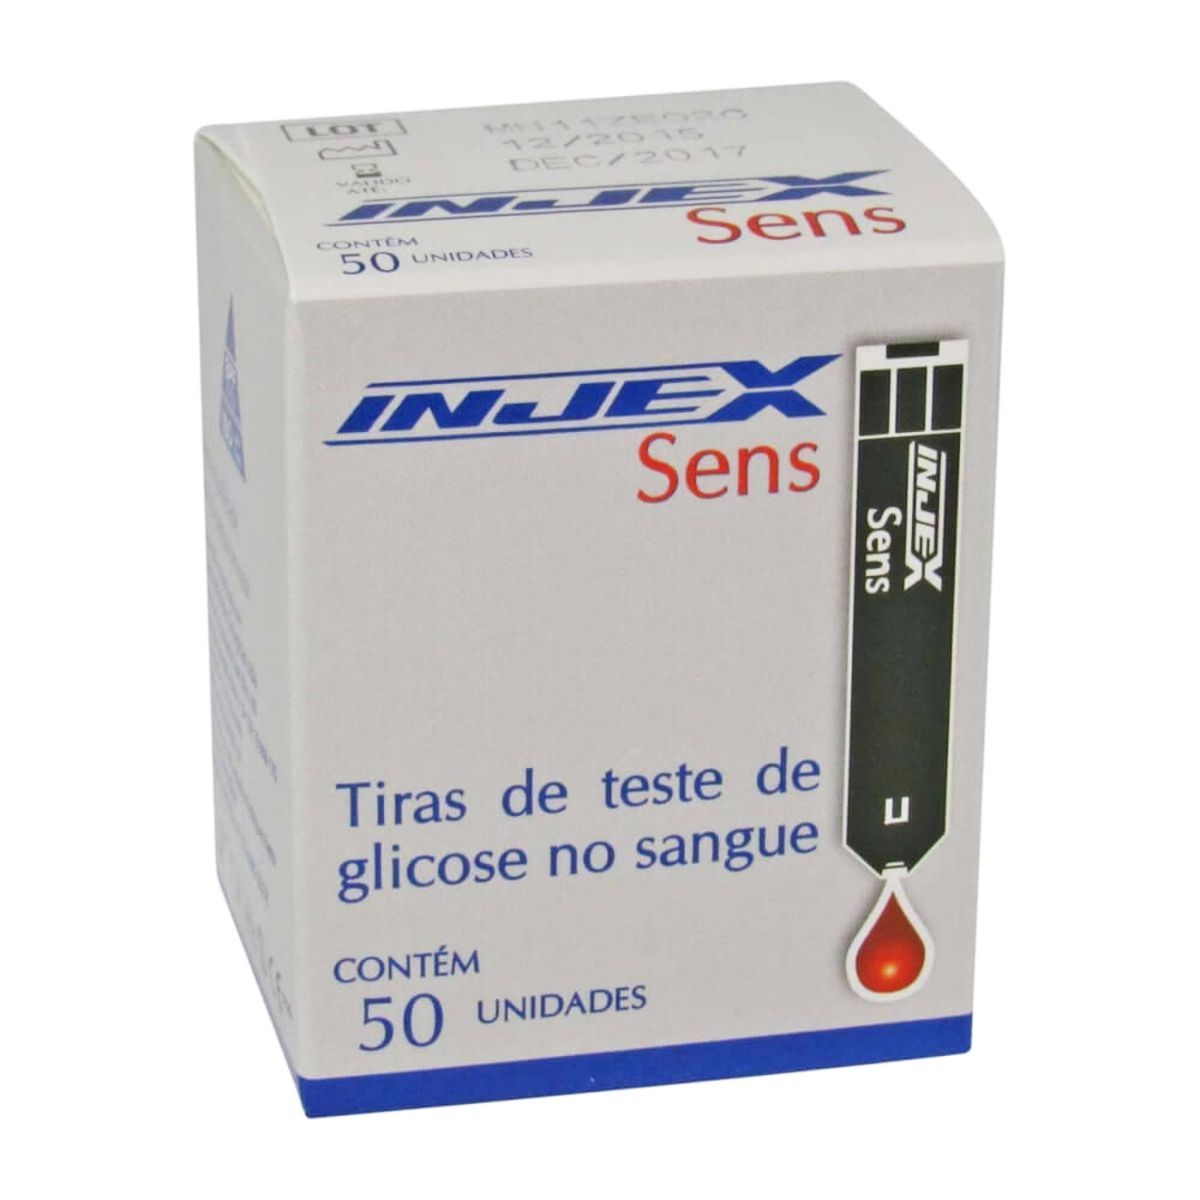 Tiras de Teste de Glicose no Sangue - com 50 Unid - Injex Sens